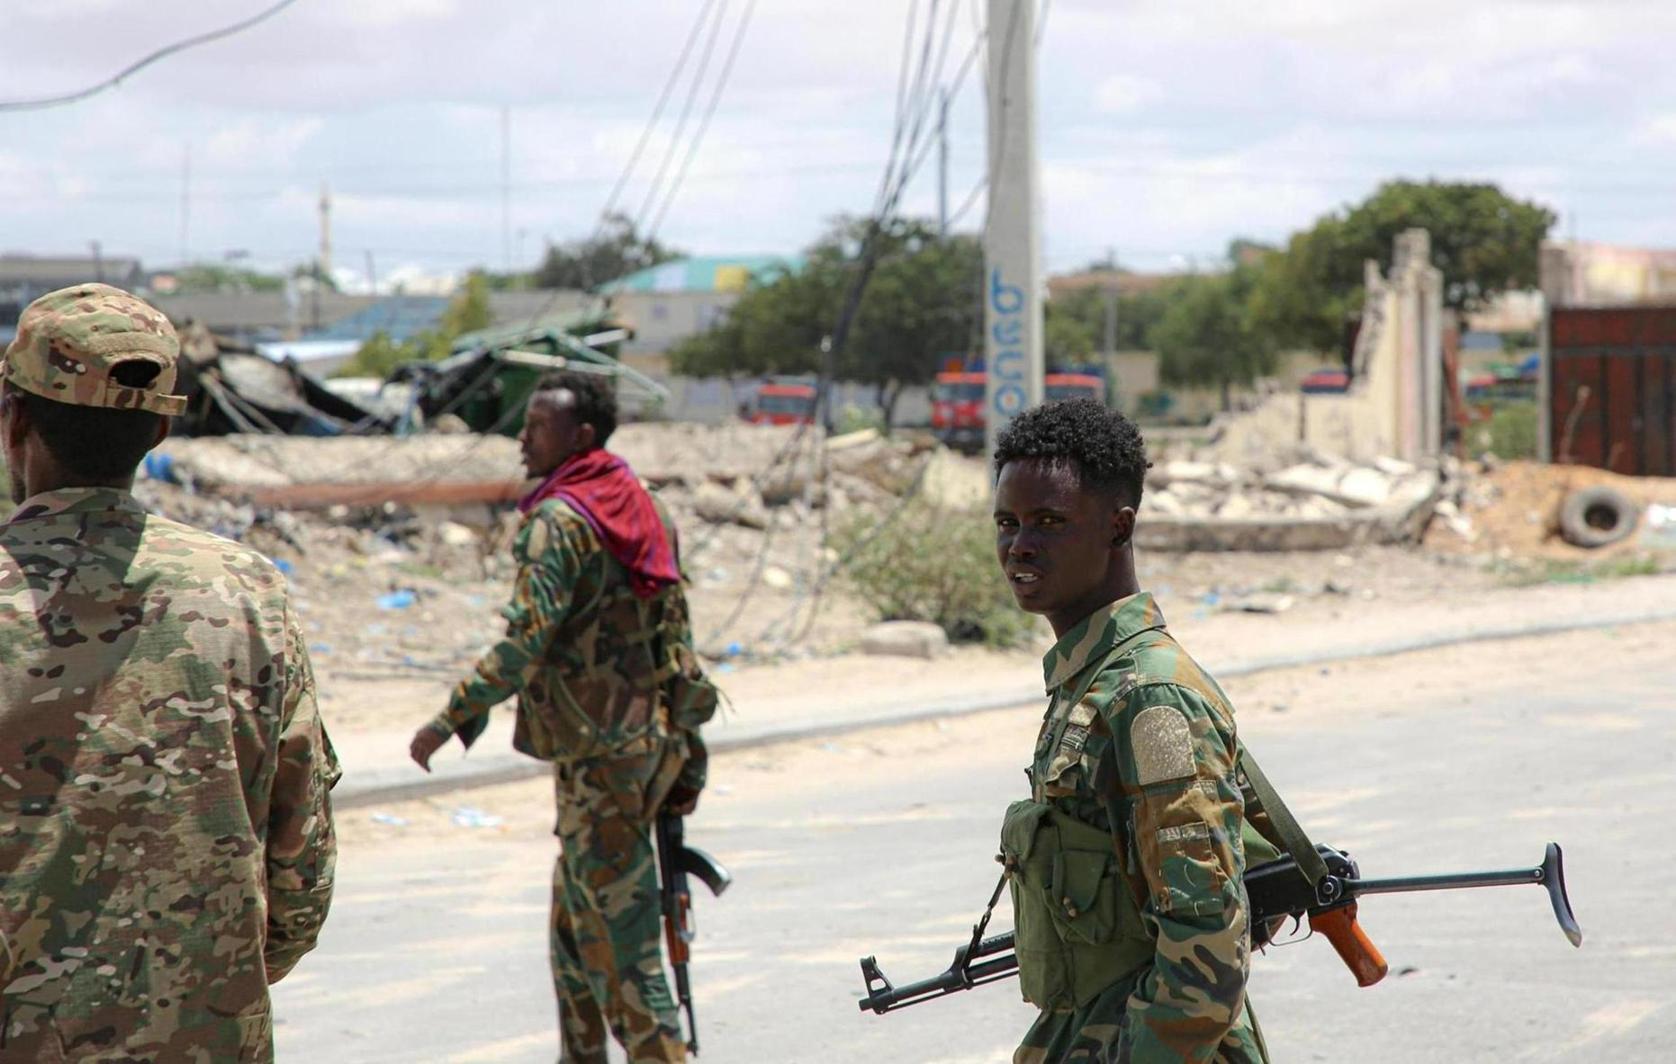 انضمام الصومال إلى مجموعة شرق أفريقيا: مكاسب سياسية وأمنية